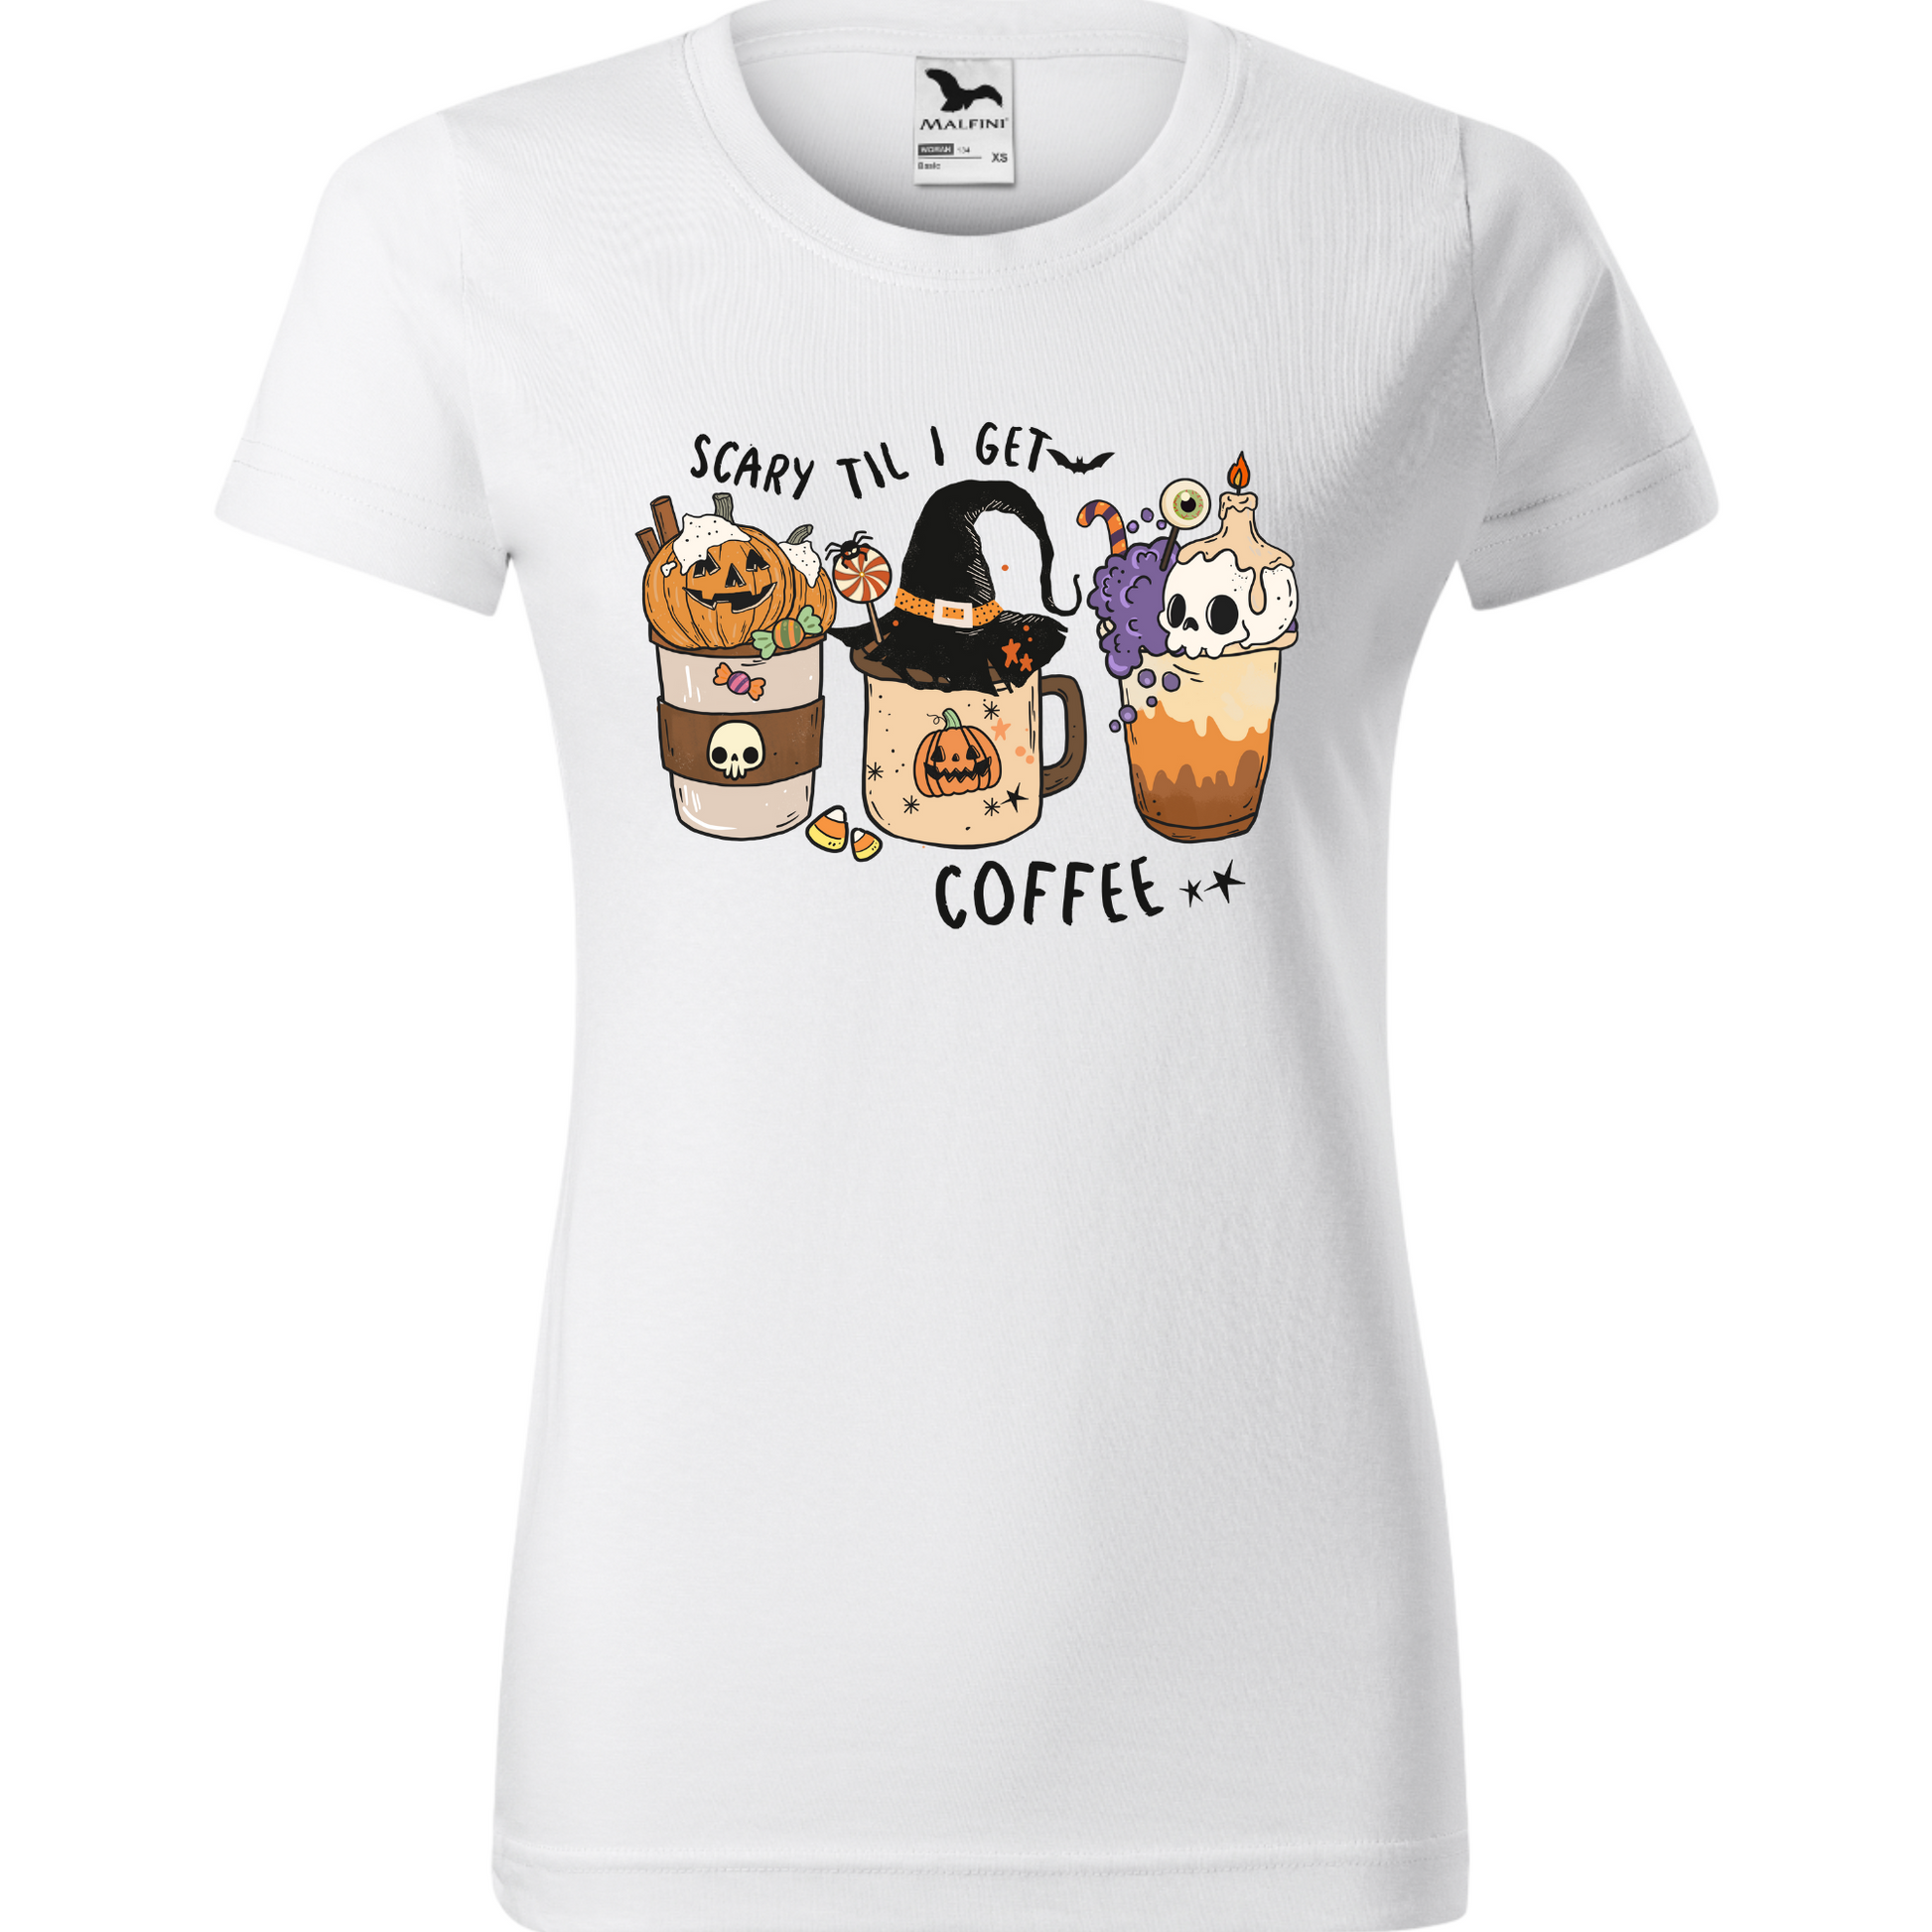 Tricou de Halloween reprezentând o ceașcă de cafea înconjurată de simboluri tematice precum lilieci și păianjeni, având inscripționat textul 'Scarry 'Til I Get Coffee'.